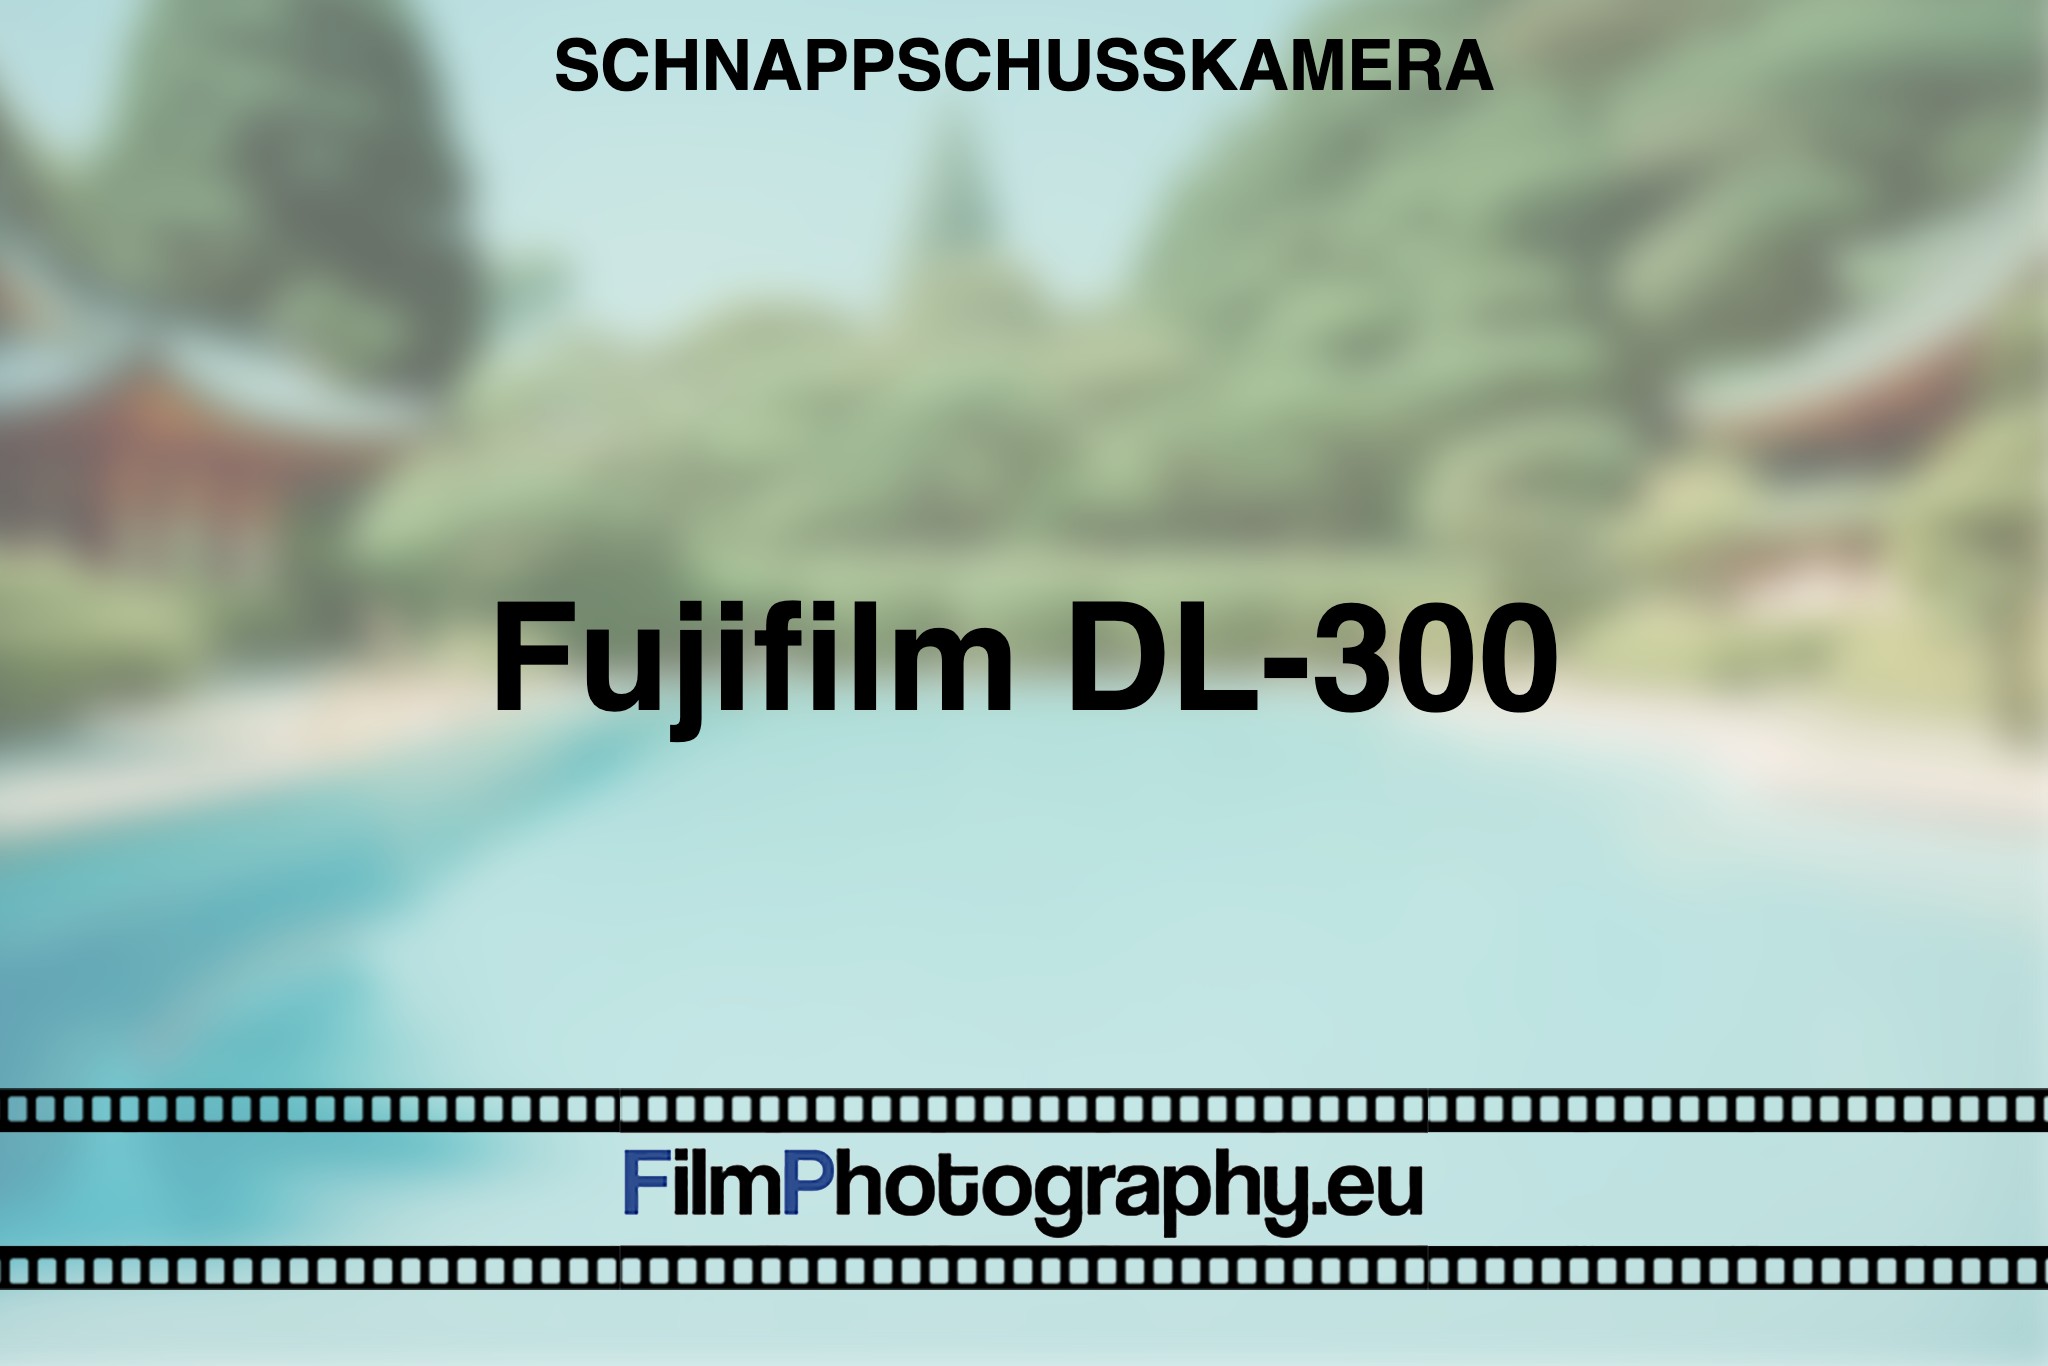 fujifilm-dl-300-schnappschusskamera-bnv